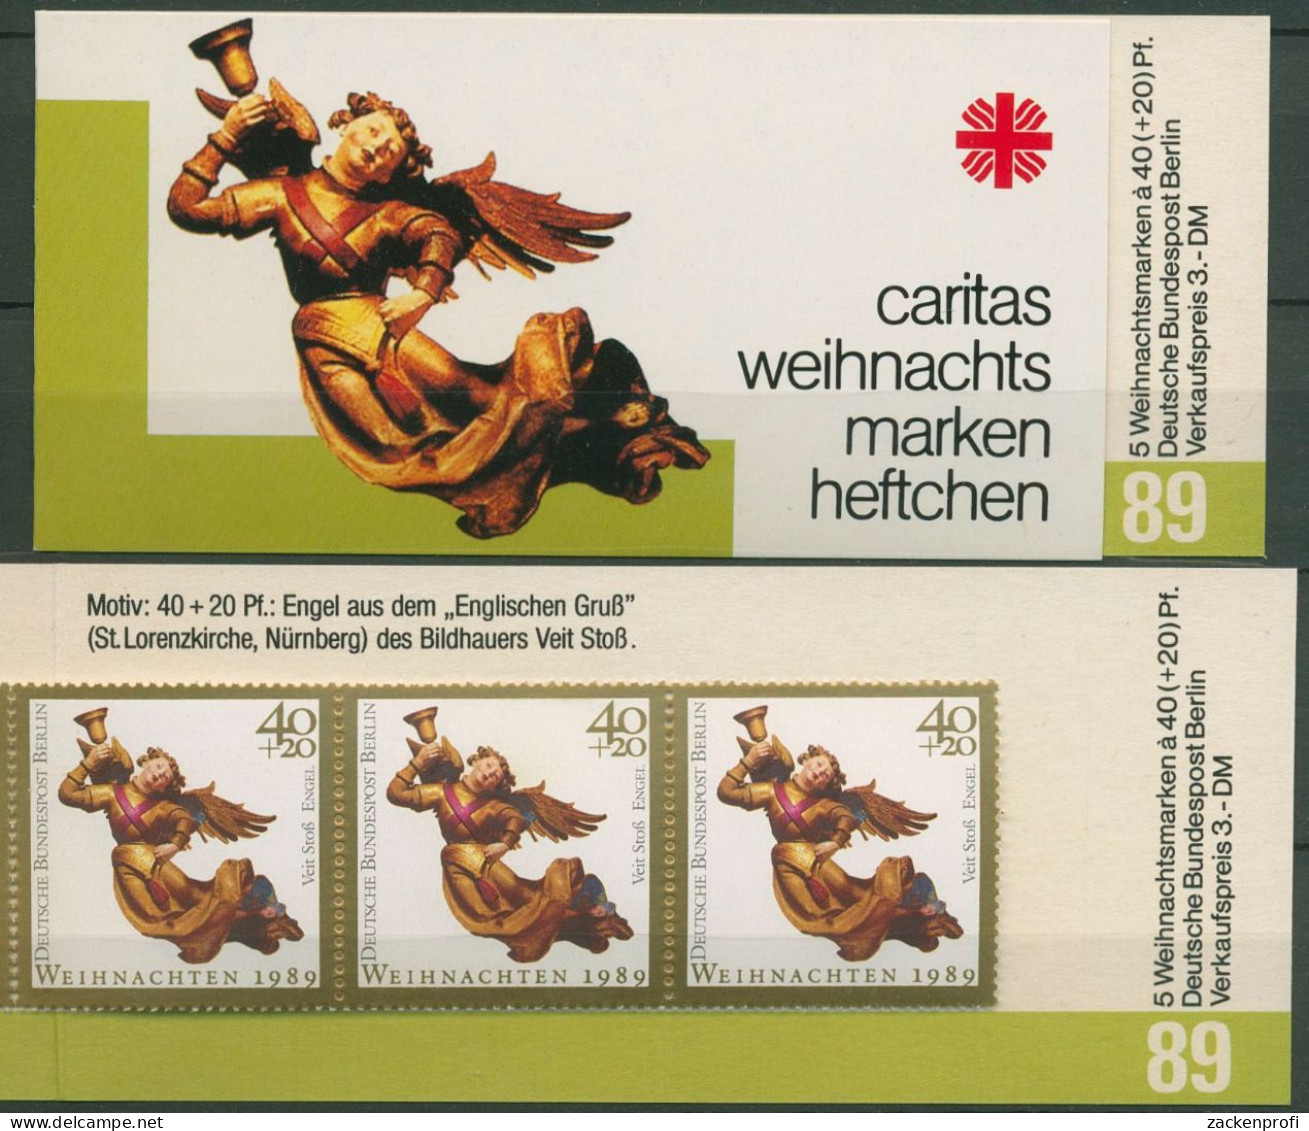 Berlin Caritas 1989 Weihnachten Markenheftchen (858) MH W 7 Postfrisch (C60249) - Booklets